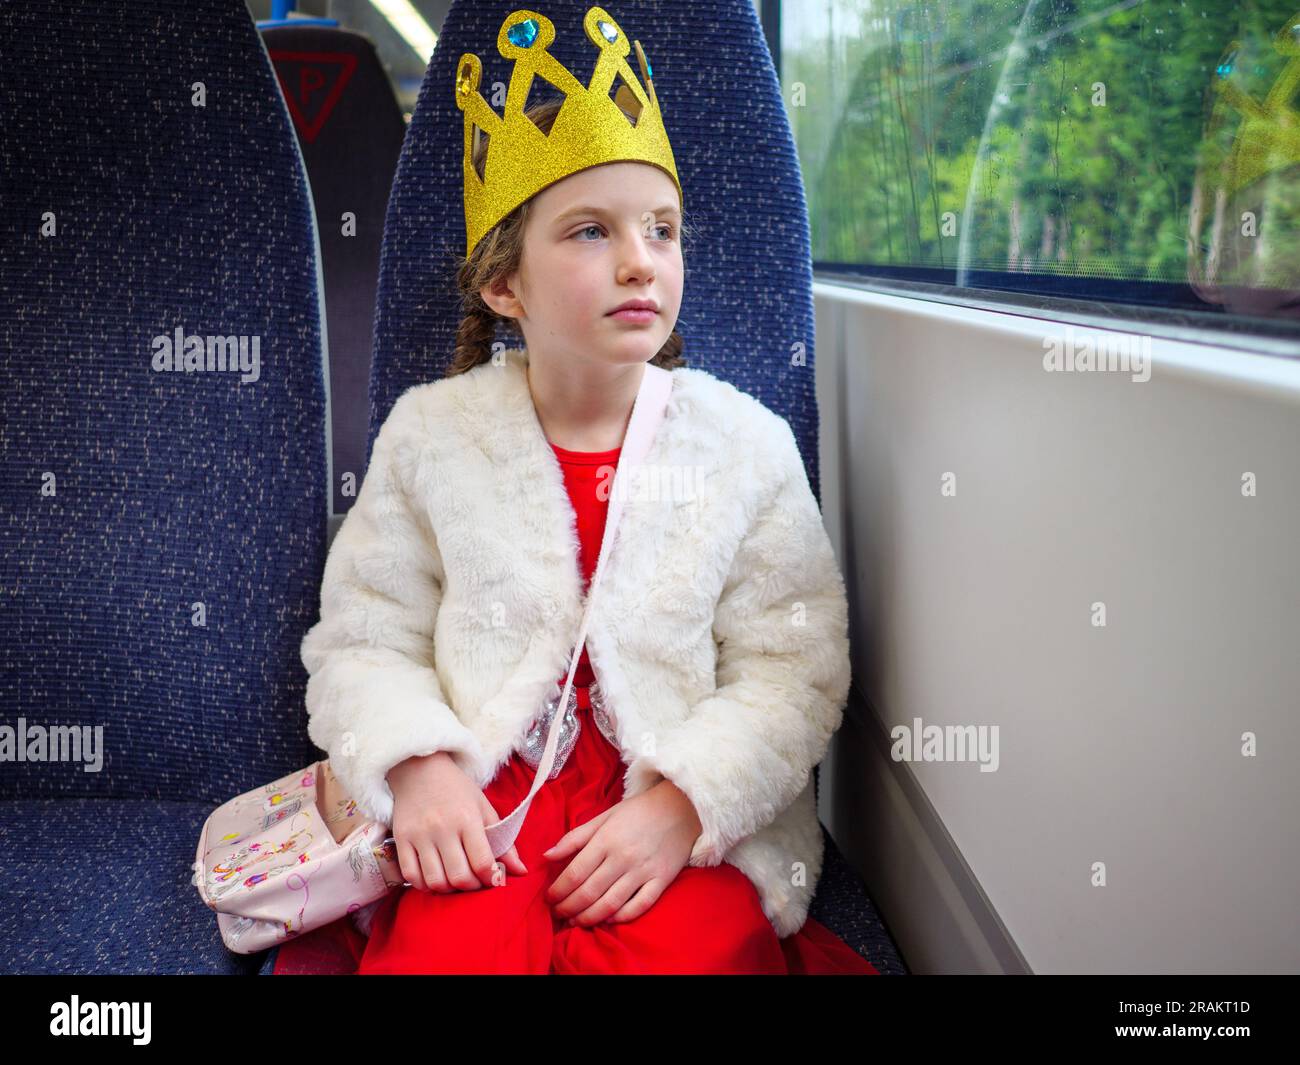 Jeune fille portant une couronne jouet voyageant à un événement en train, Angleterre, Royaume-Uni Banque D'Images